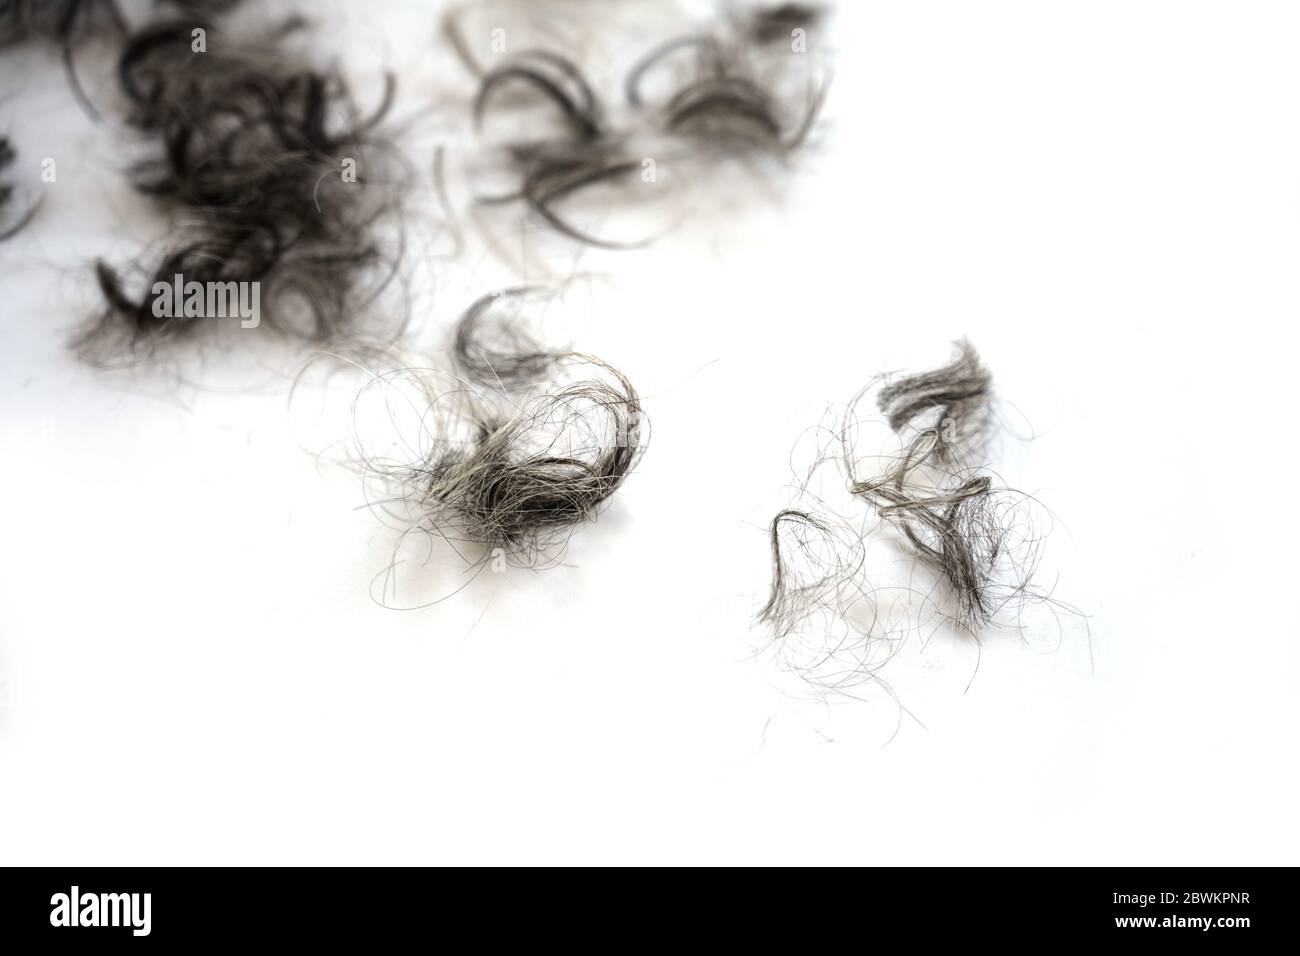 Touffes de boucles noires et grises après la coupe des cheveux sur un fond blanc, espace de copie, mise au point sélectionnée, profondeur de champ très étroite Banque D'Images